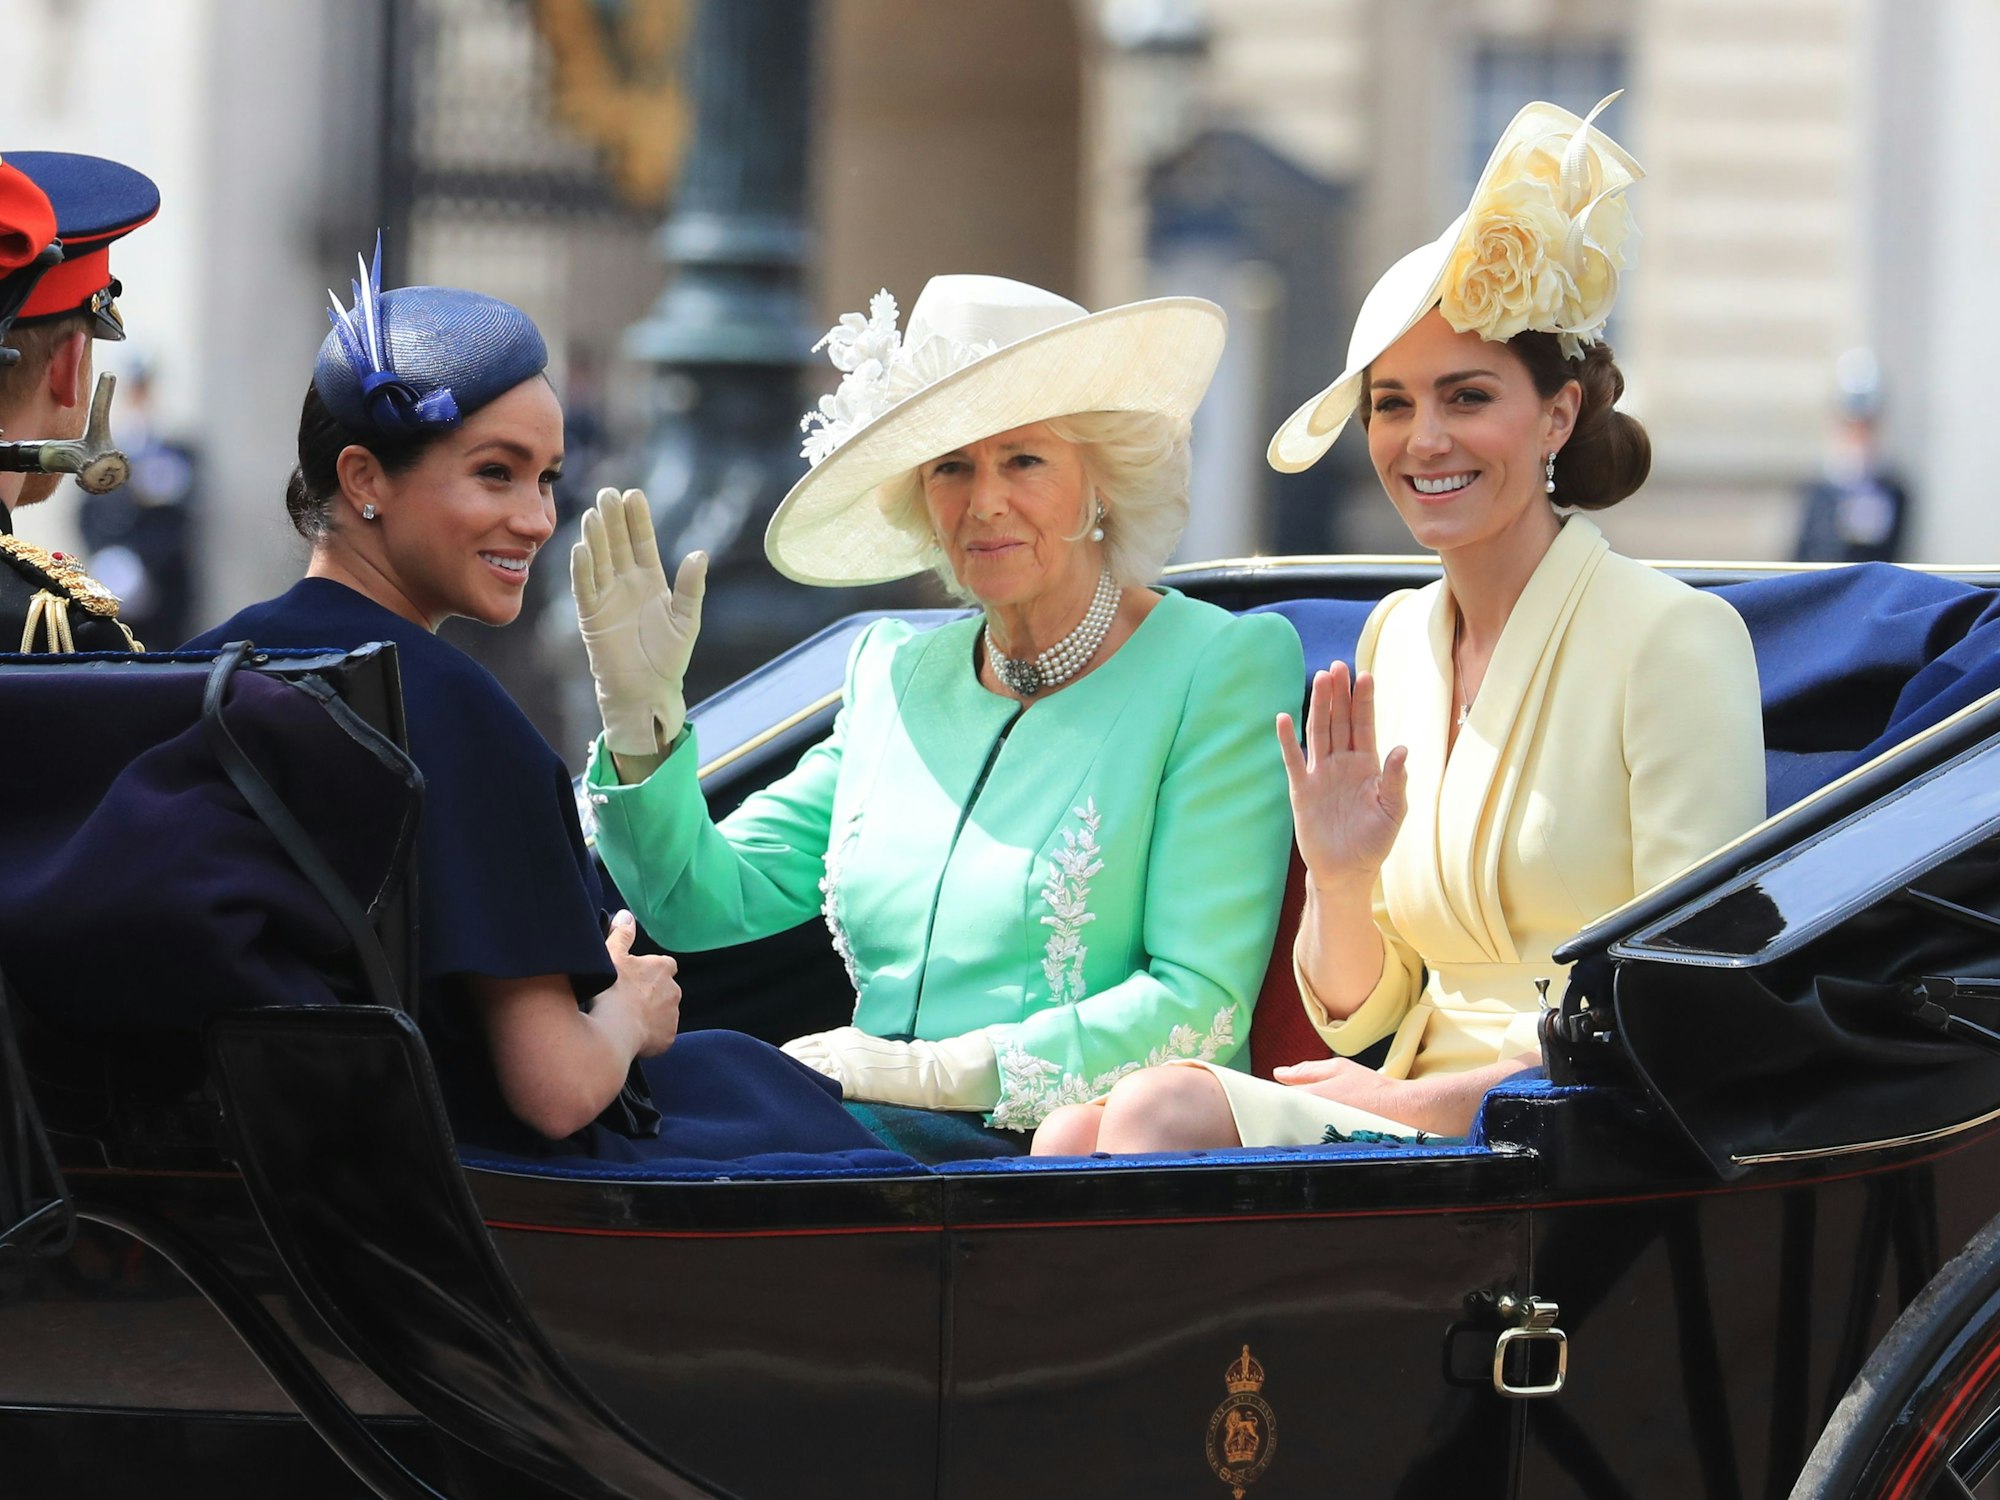 Auf diese Frauen blickt die Welt. Camilla (Mitte) ist die Königsgemahlin an der Seite von König Charles III. Die Kinder von Schwiegertochter Meghan (l.) sind nun Prinz und Prinzessin. Und Kate (r.), Frau von Thronfolger William bekommt Dianas Titel als Herzogin von Wales. Das Foto zeigt das Trio am 21. April 2019.